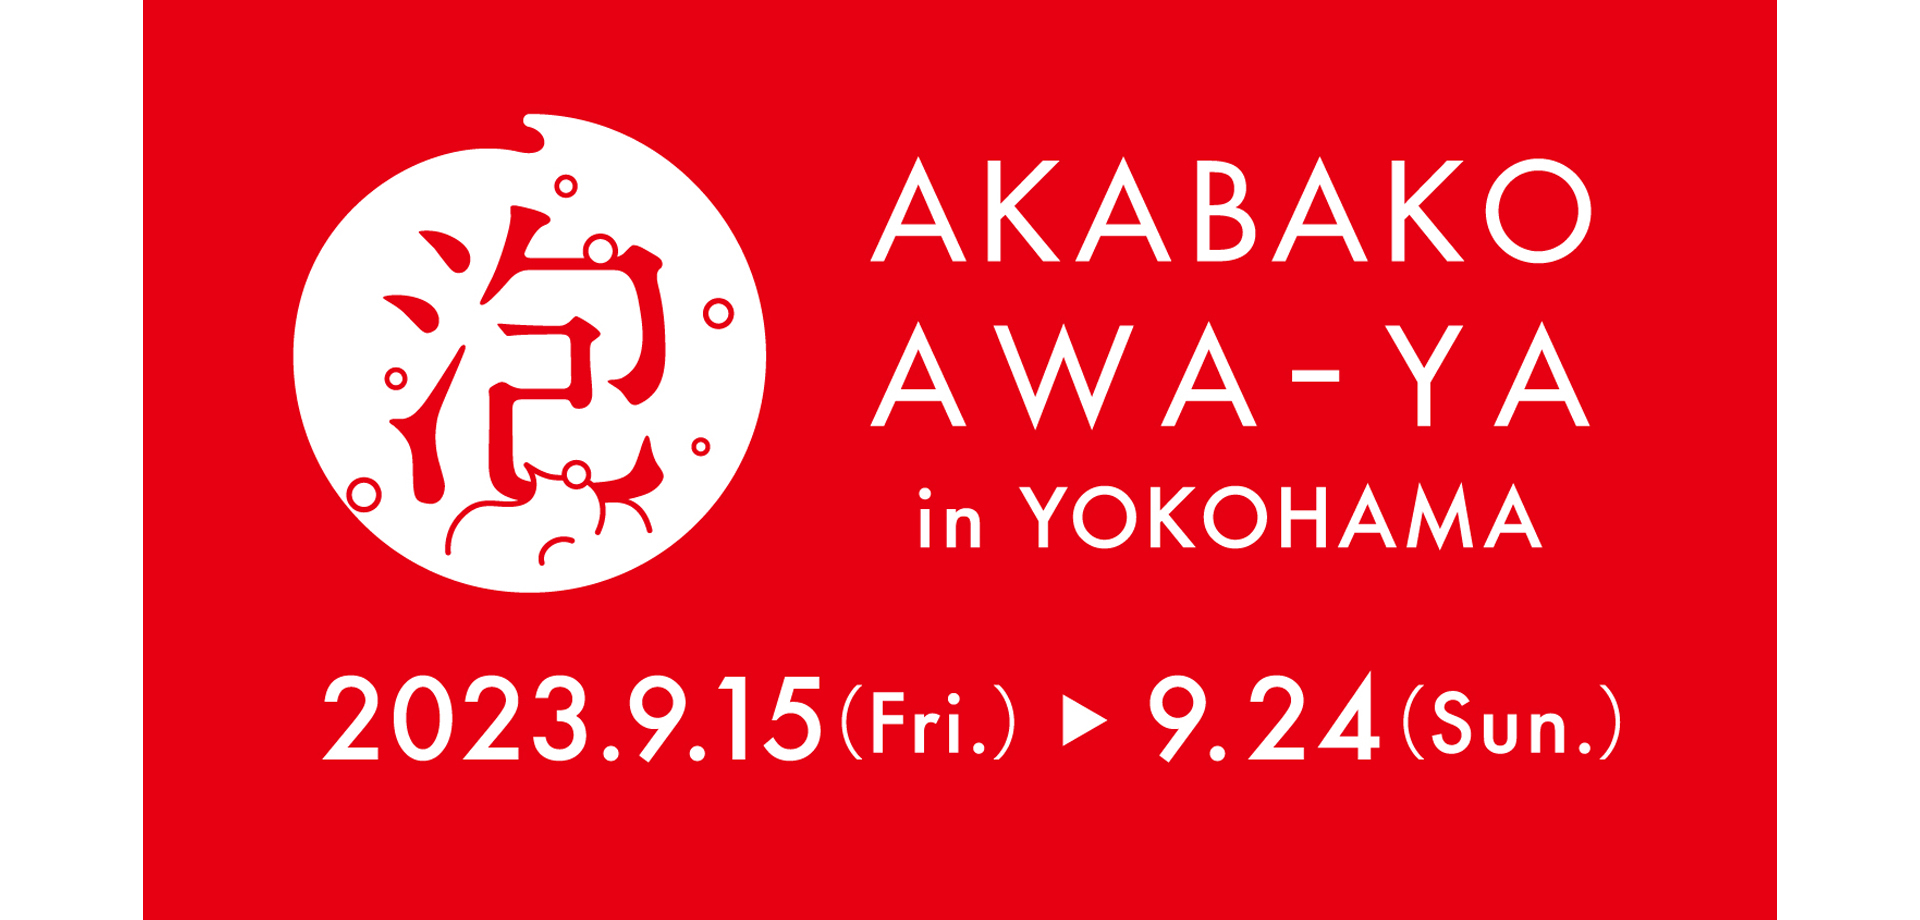 牛乳石鹸「赤箱 AWA-YA in YOKOHAMA」 横浜赤レンガ倉庫